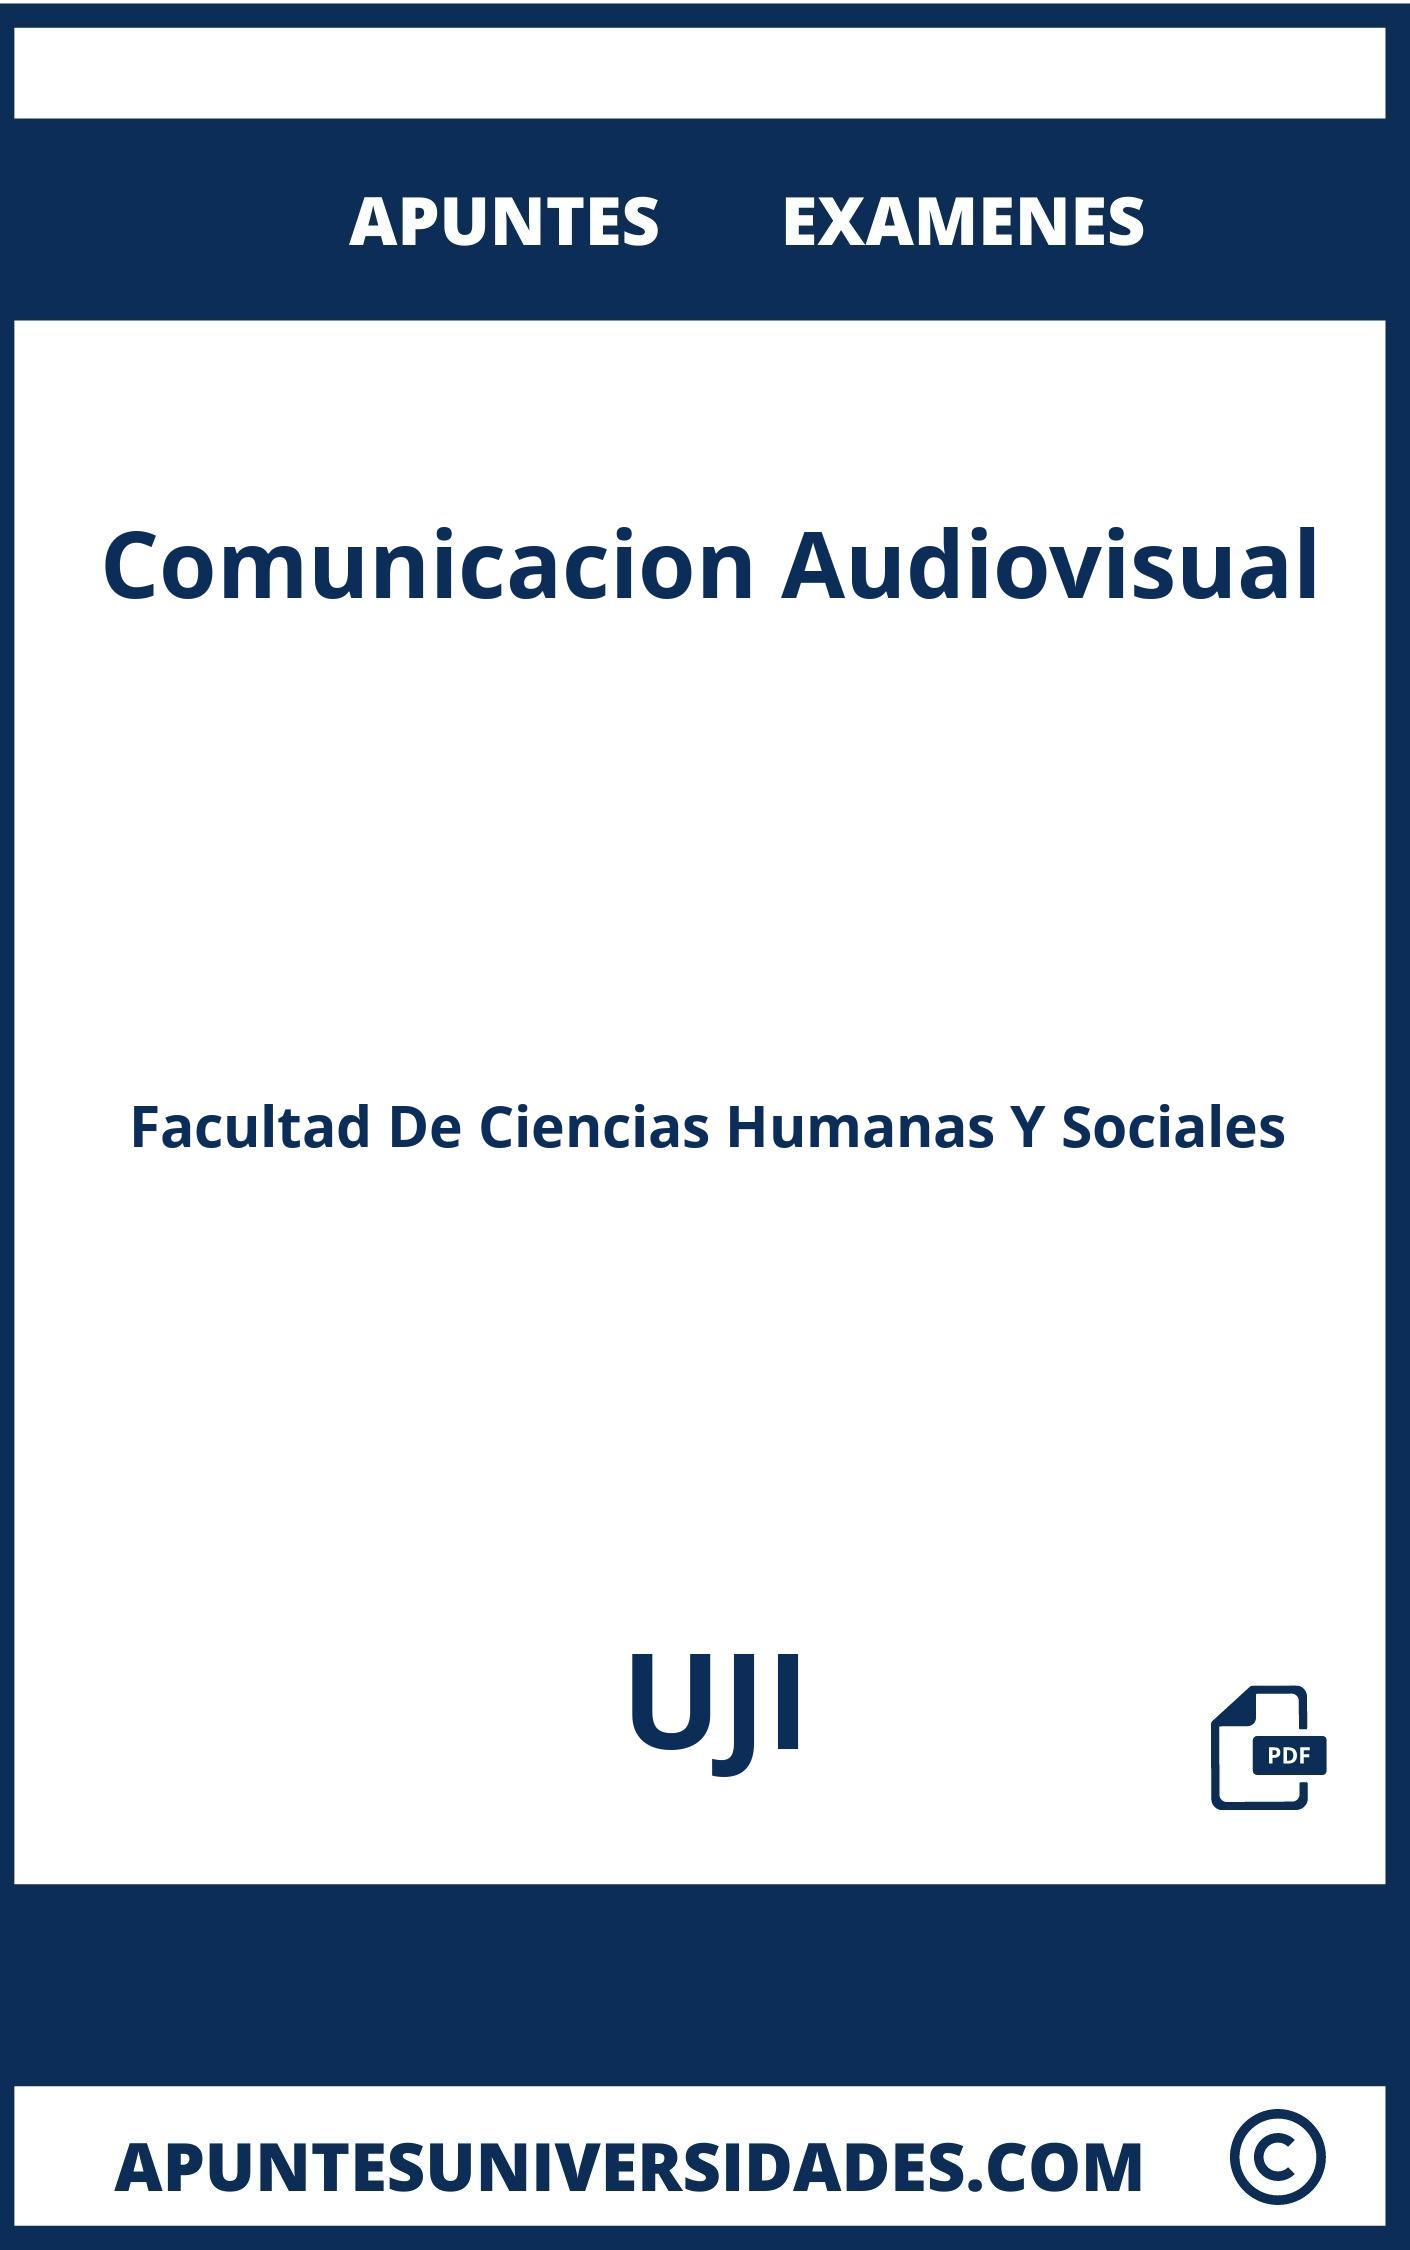 Apuntes y Examenes Comunicacion Audiovisual UJI